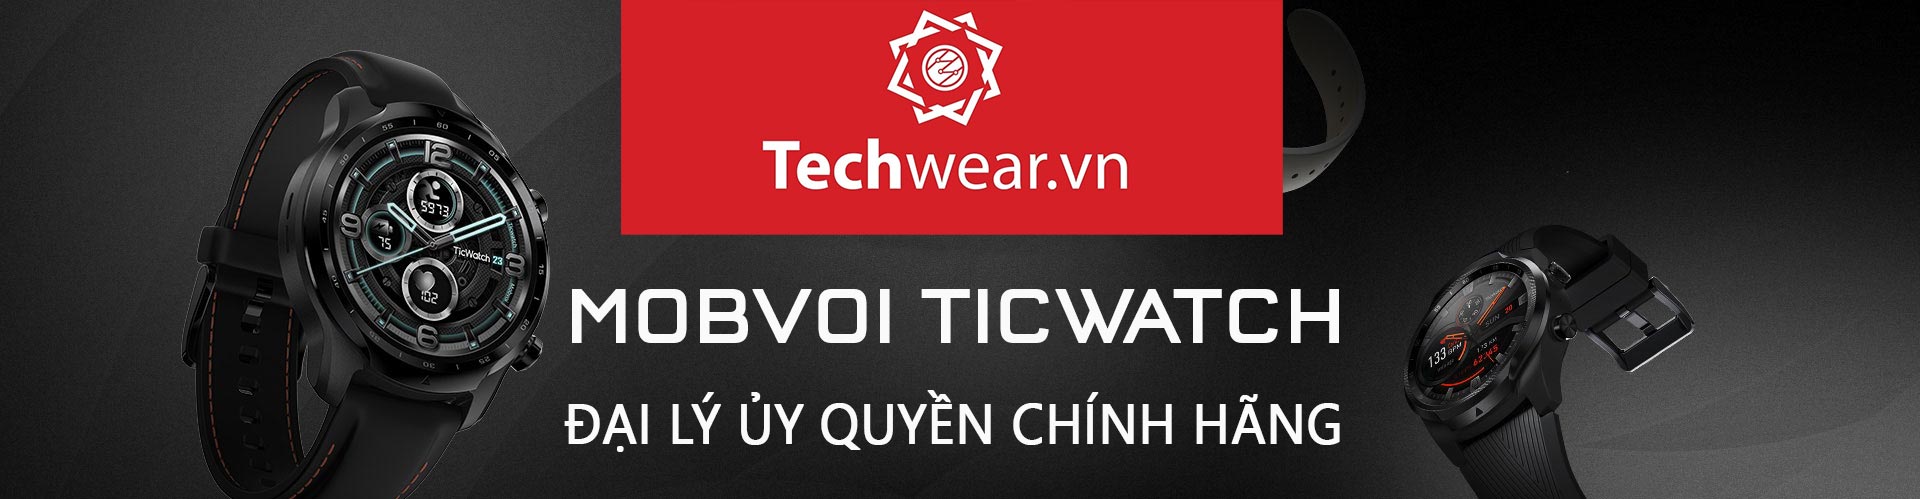 mobvoi ticwatch techwear